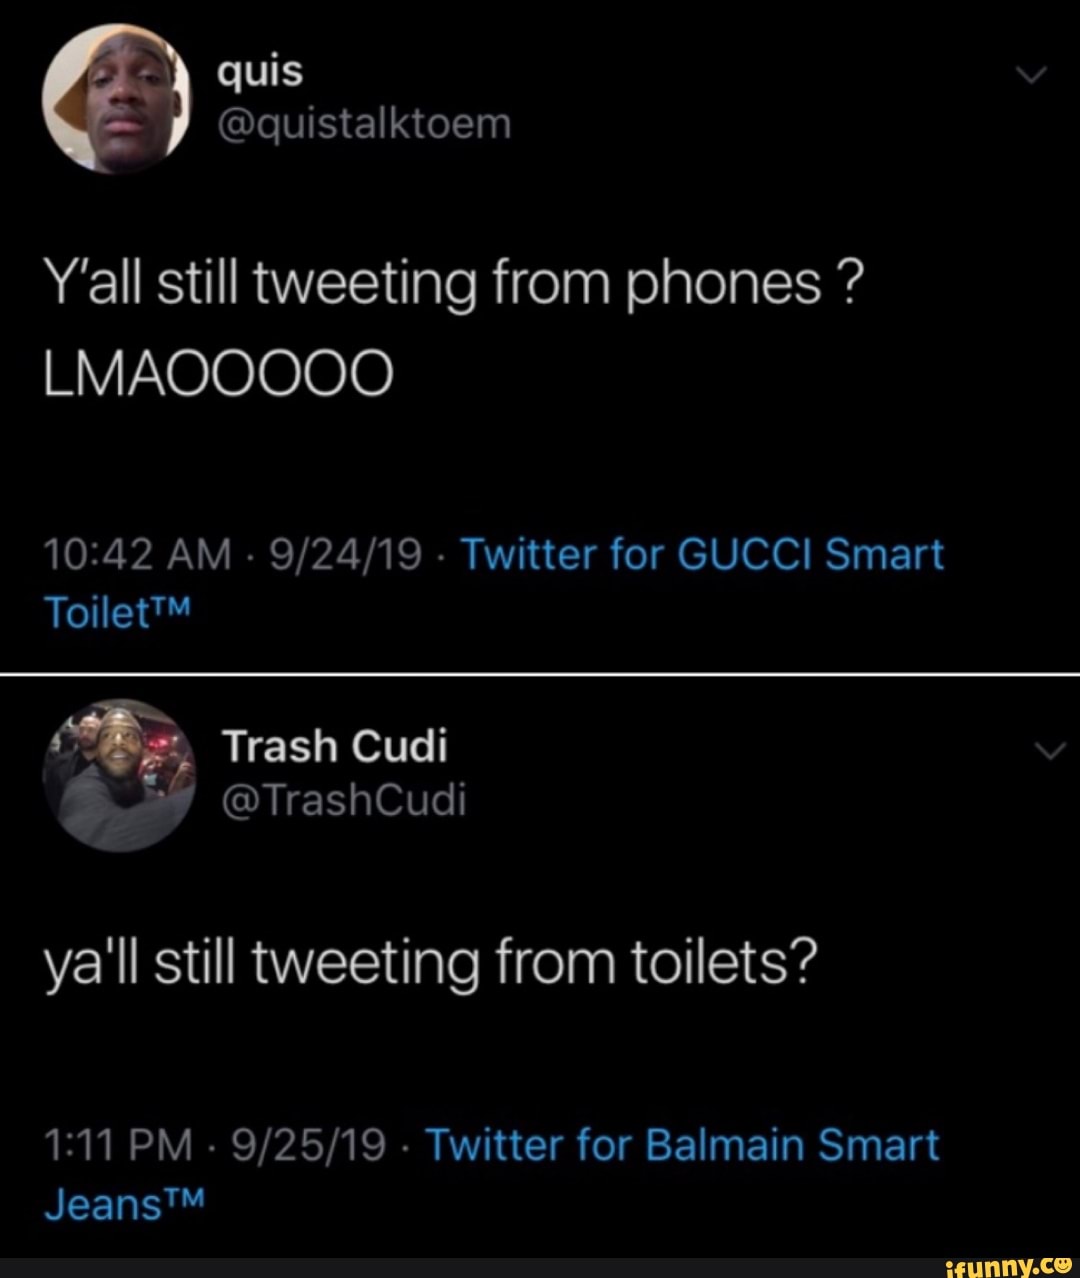 GUCCI Smart ya'll still tweeting from 